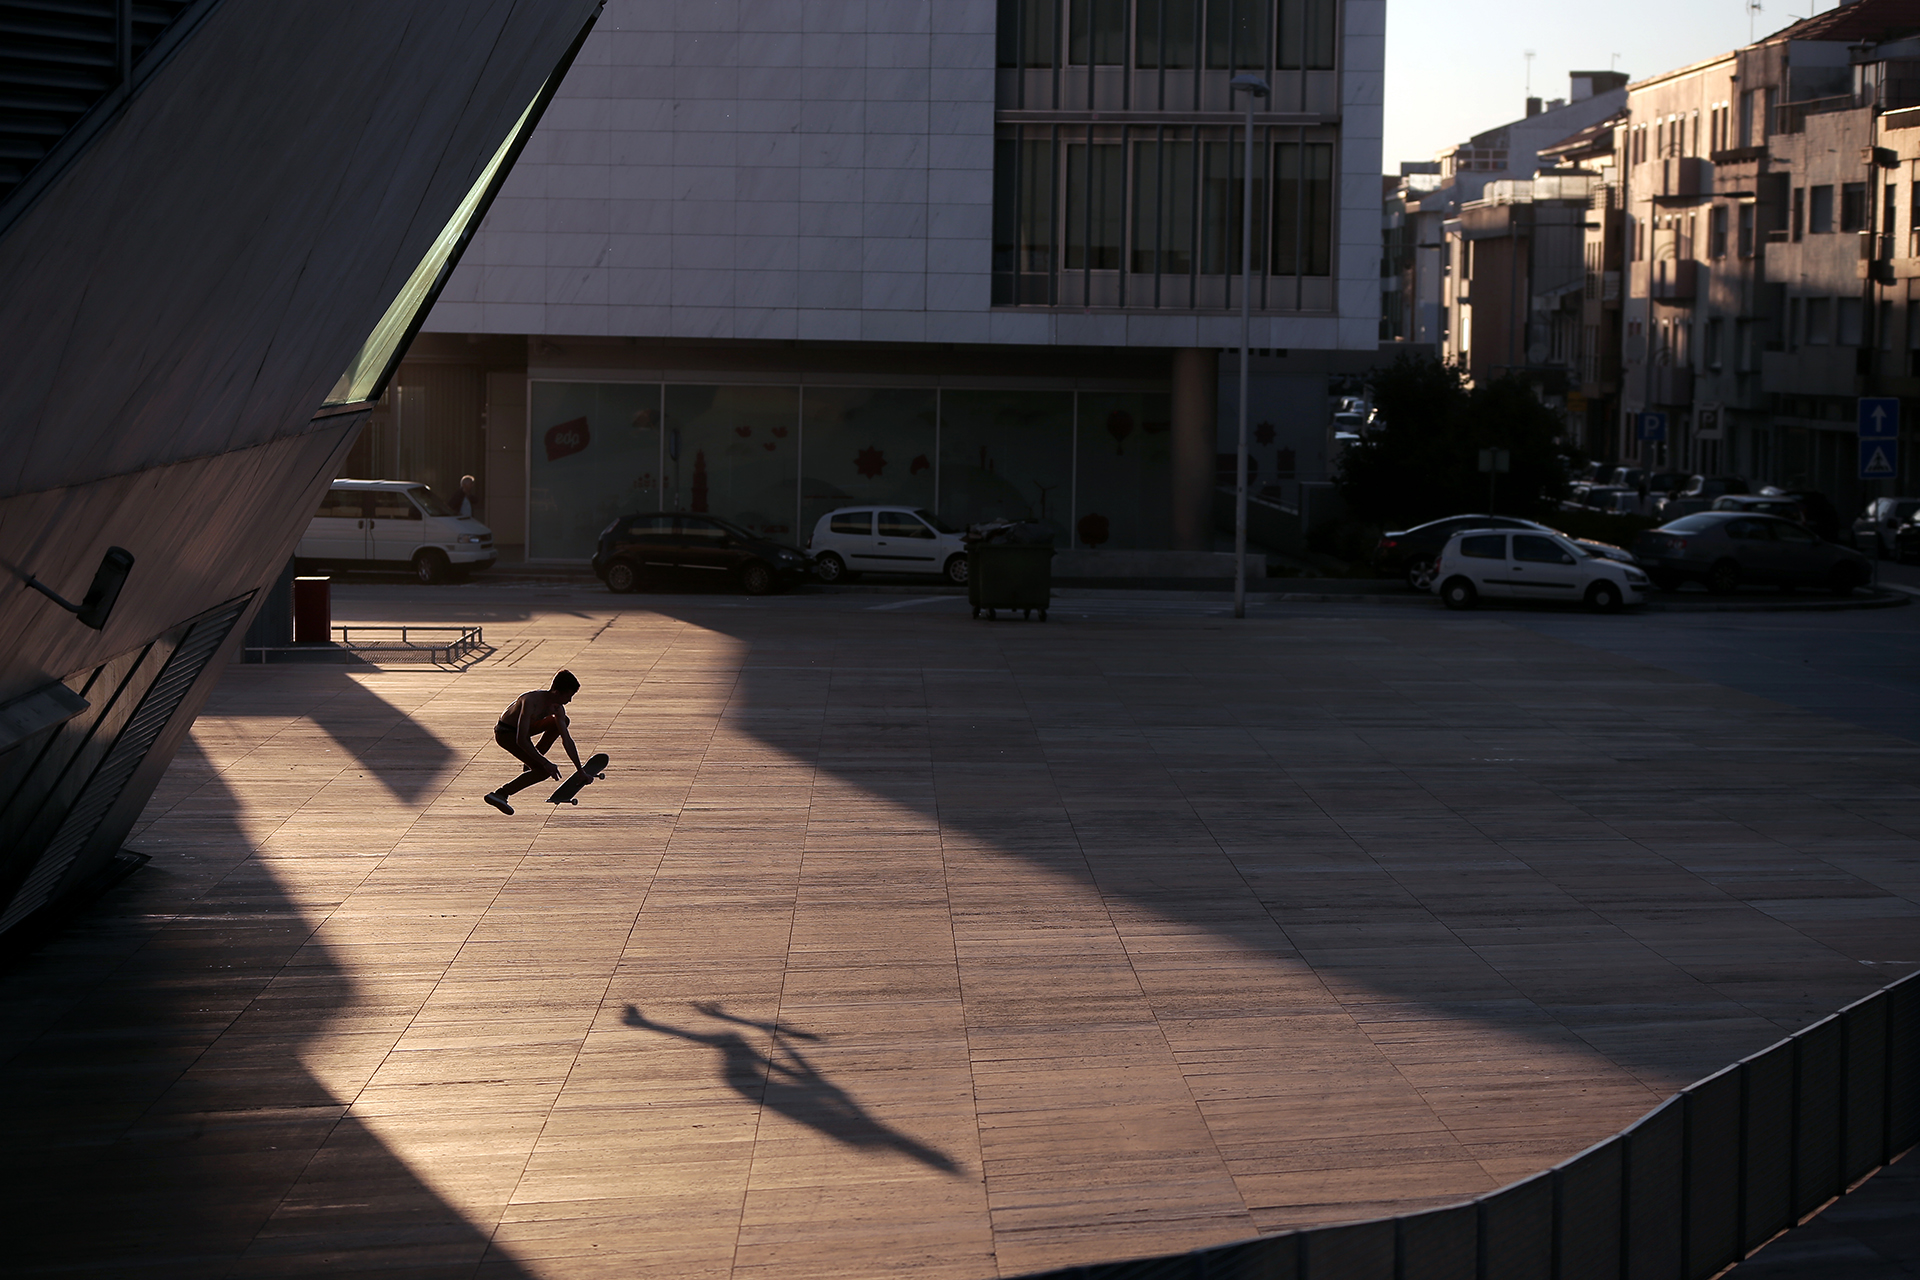 Skateboarding_Life_Renato_Lainho_com (15jd)